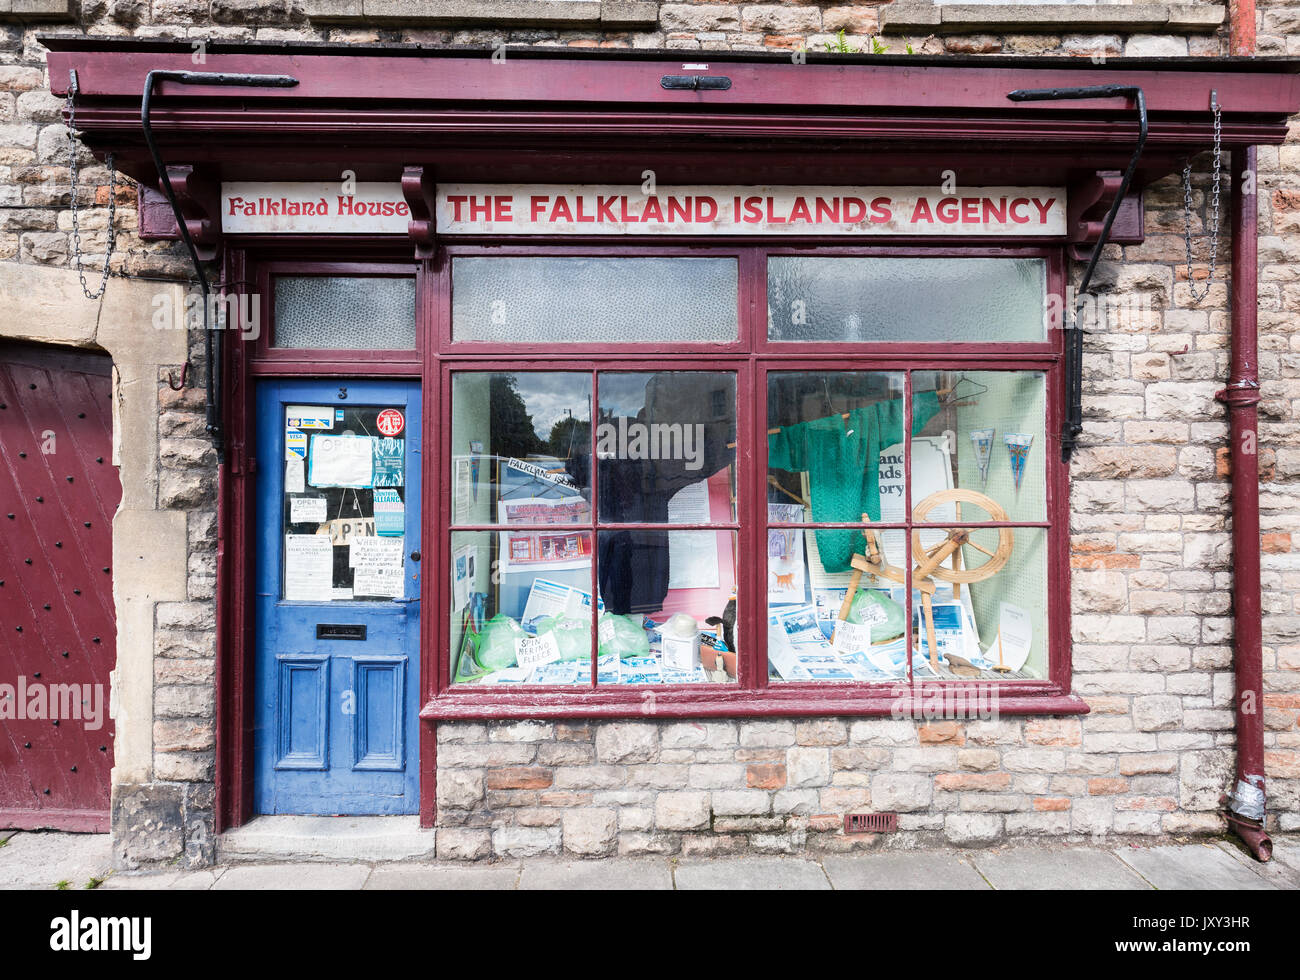 Las Islas Malvinas, Falkland tienda Agencia de casa. Wells, Somerset, Reino Unido. Foto de stock